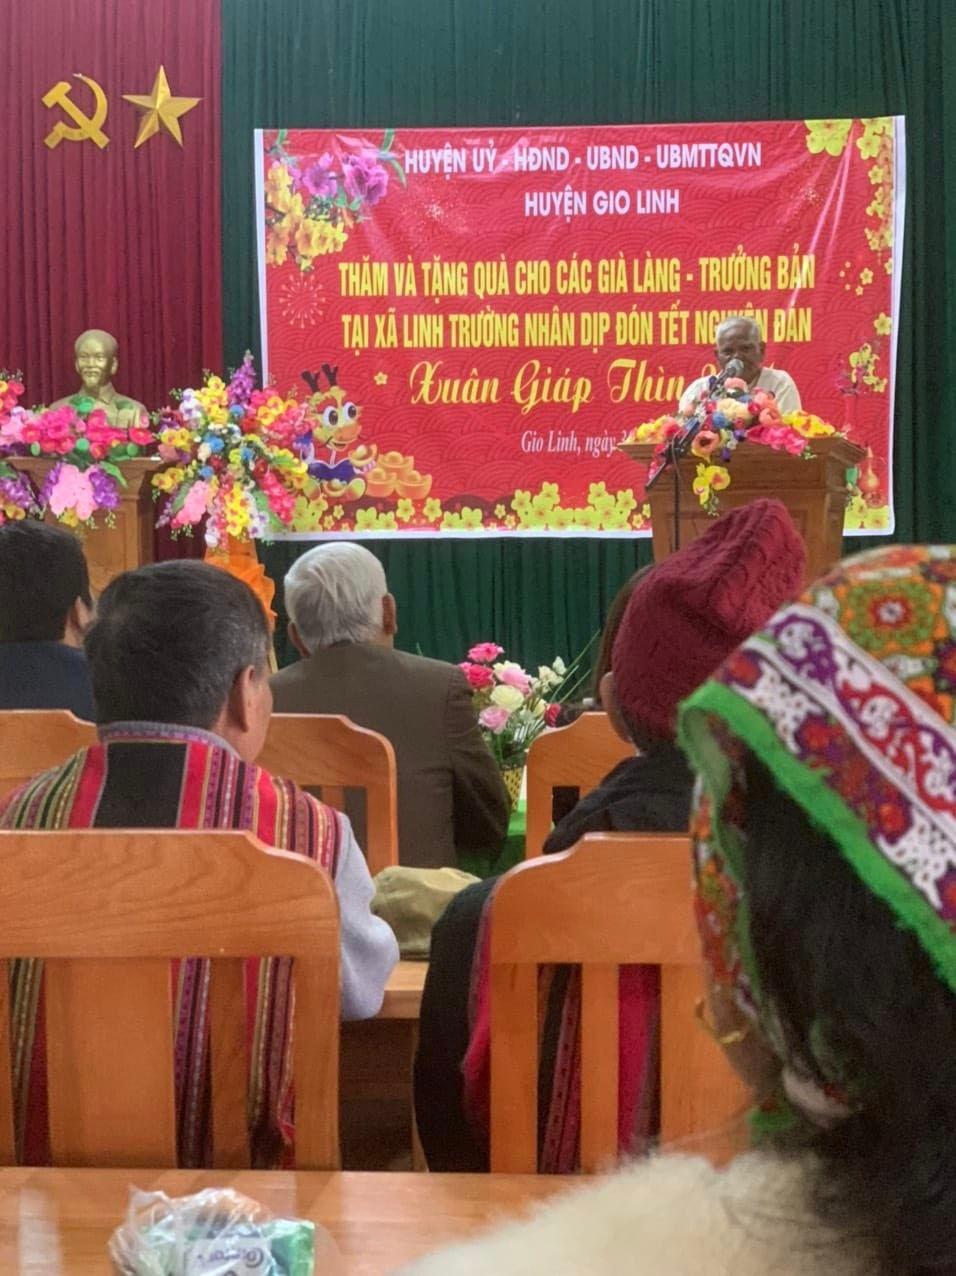 Lãnh đạo huyện Gio Linh thăm, tặng quà cho già làng, trưởng bản, người có uy tín trong đồng bào...